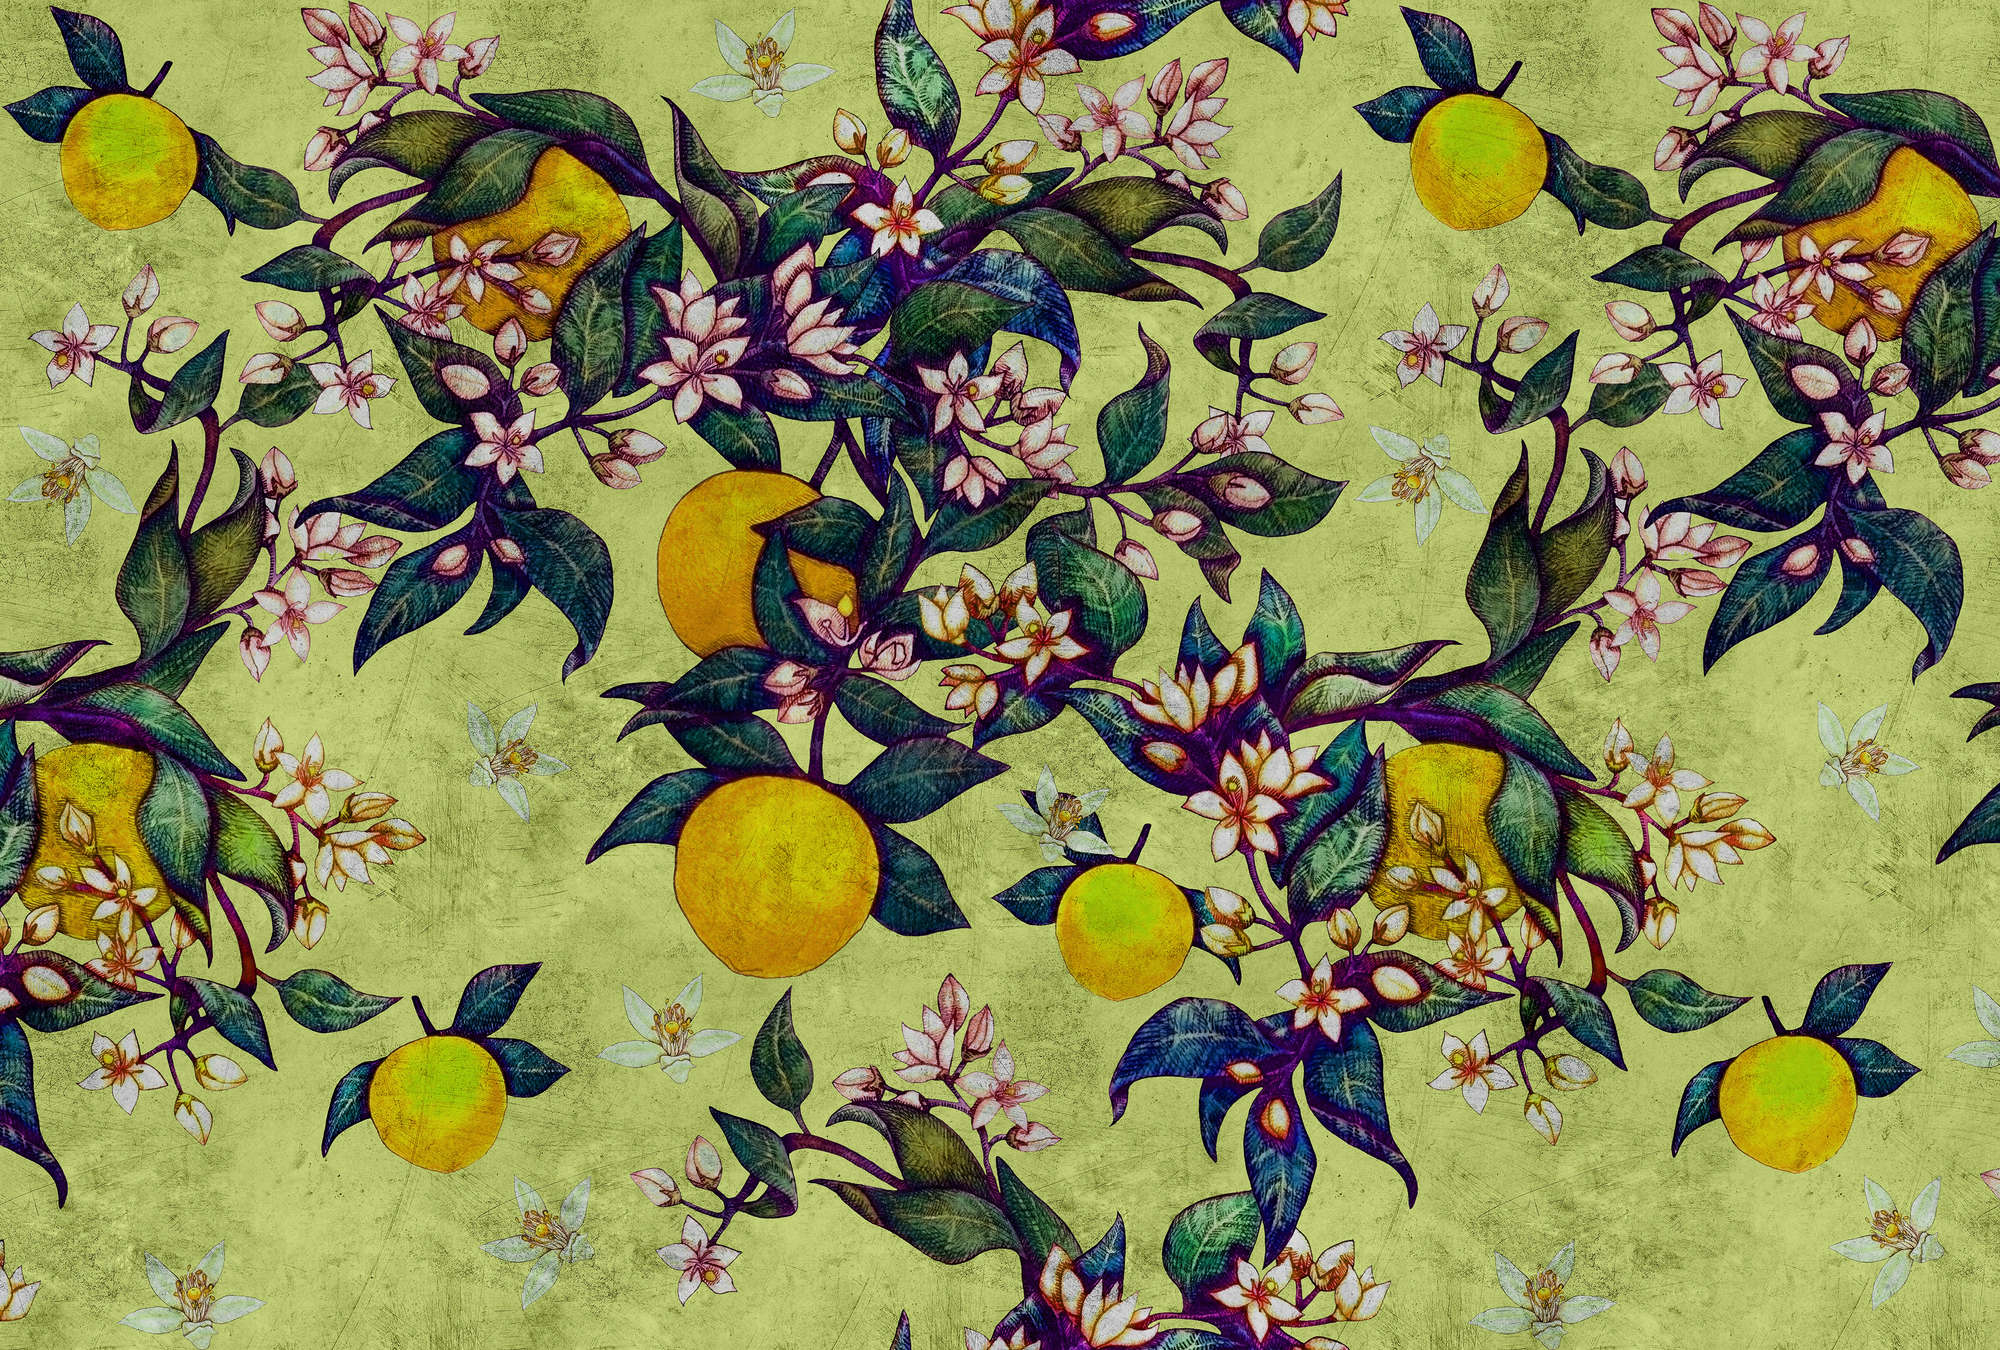             Grapefruit Tree 1 - Papel Pintado Textura Rasposa con Motivos Cítricos y Florales - Amarillo, Verde | Tejido sin tejer liso mate
        